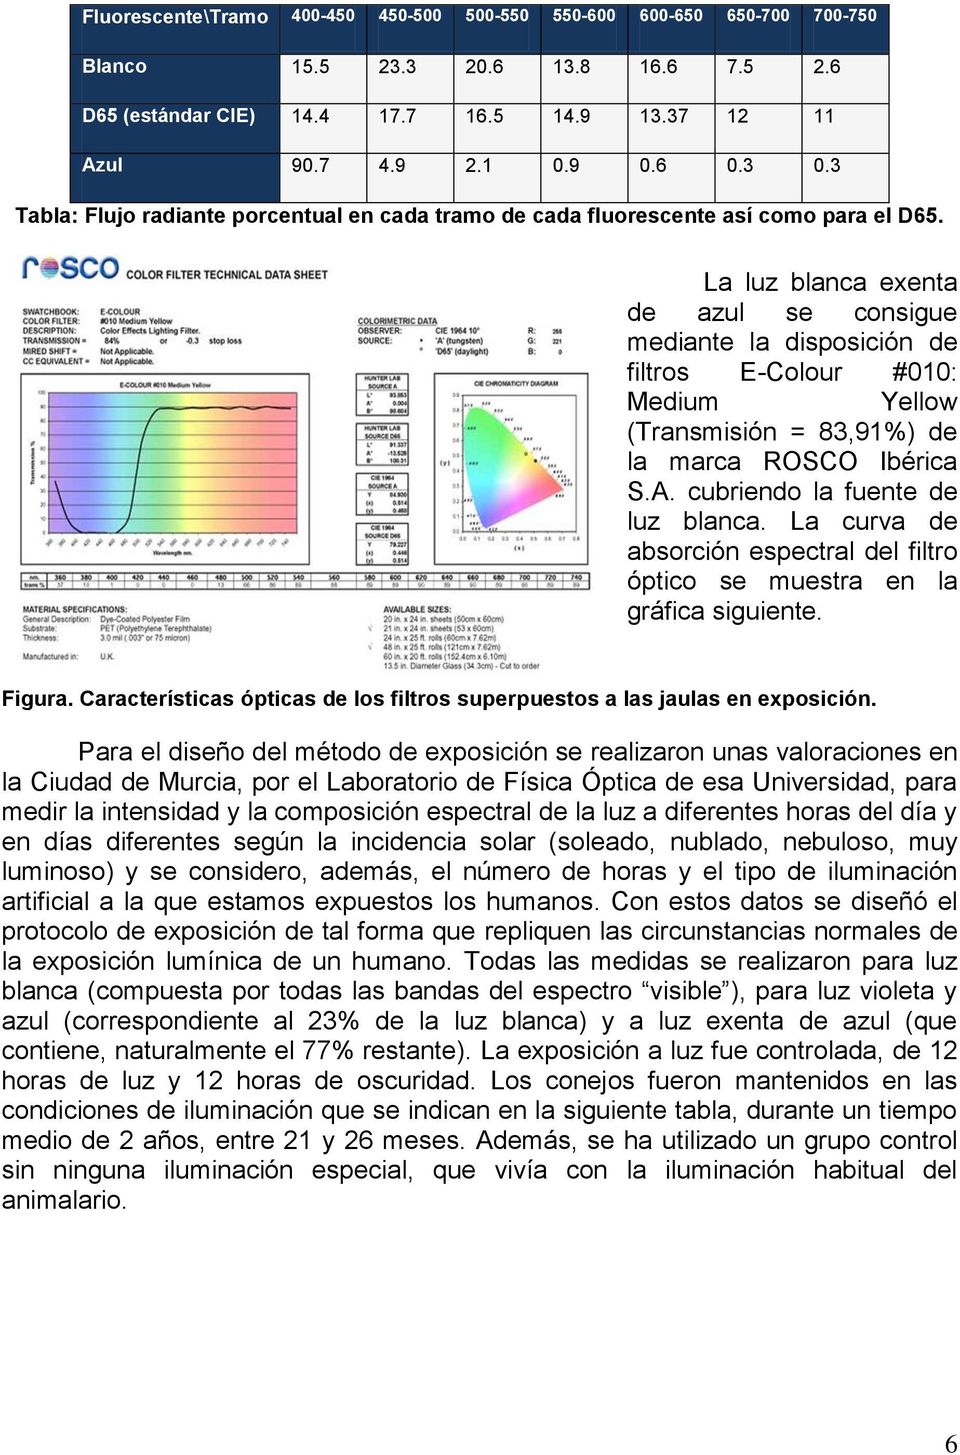 La luz blanca exenta de azul se consigue mediante la disposición de filtros E-Colour #010: Medium Yellow (Transmisión = 83,91%) de la marca ROSCO Ibérica S.A. cubriendo la fuente de luz blanca.